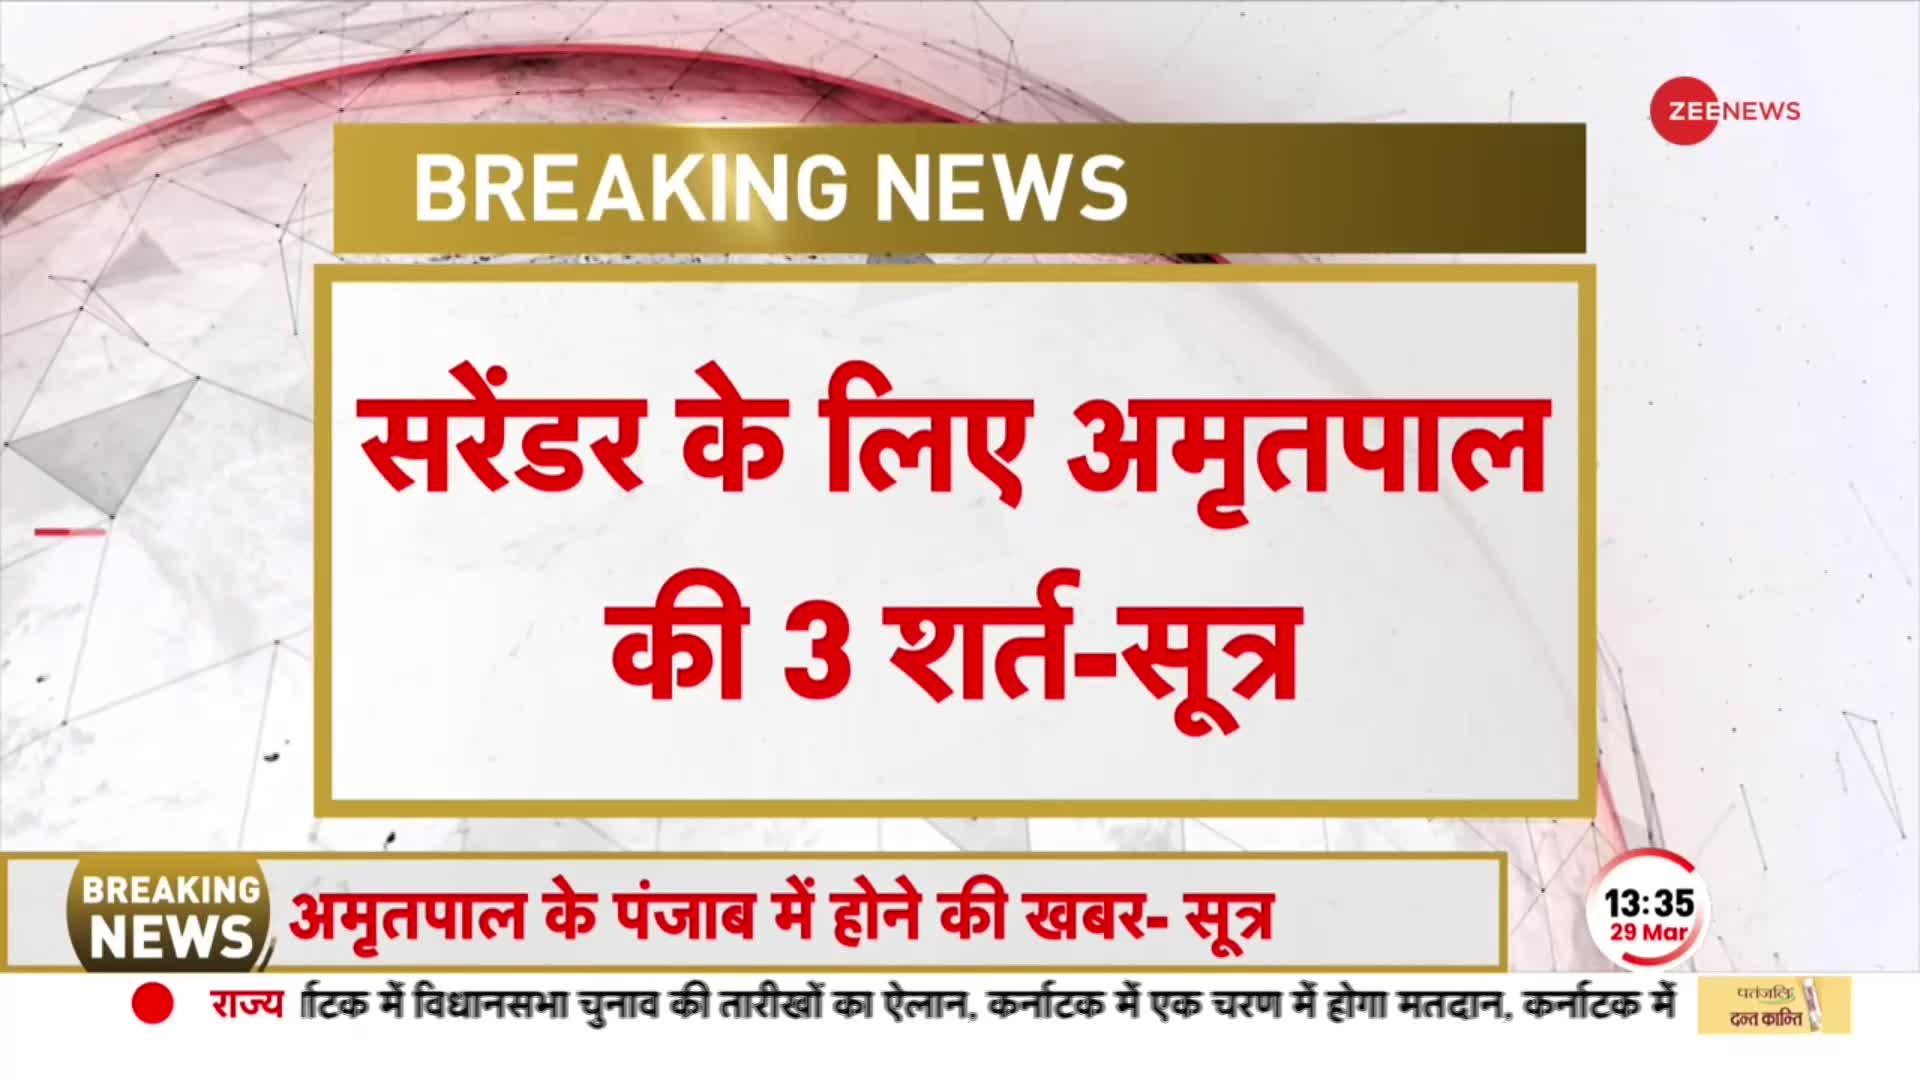 Amritpal Singh News: सरेंडर करना चाहता है अमृतपाल, पुलिस के सामने रखी 3 शर्त-सूत्र